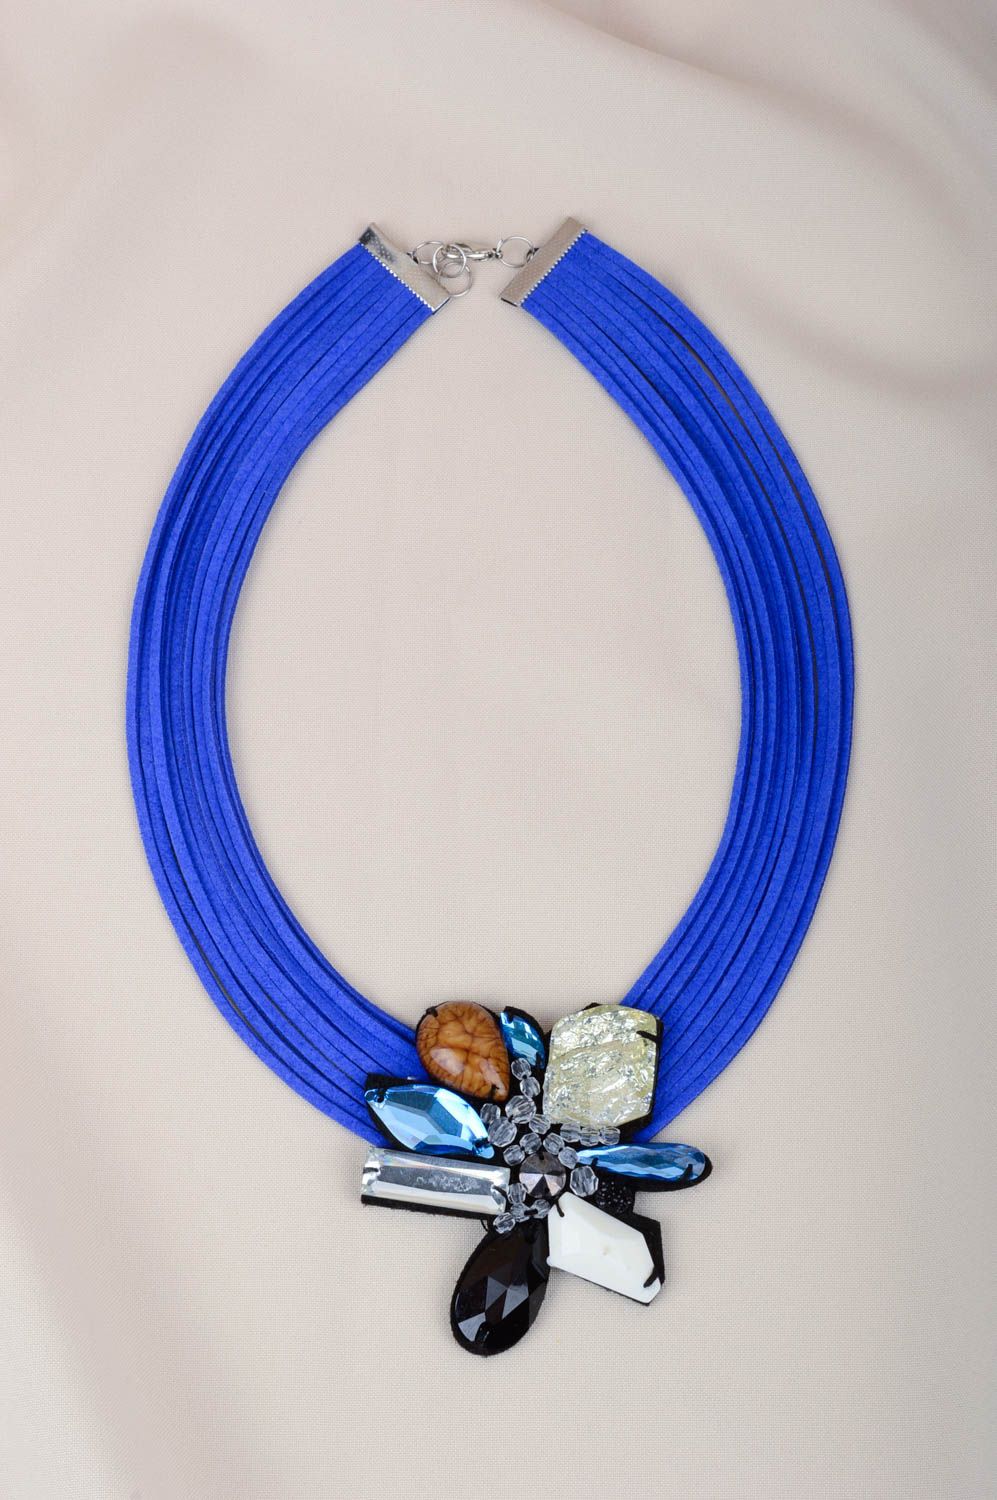 Колье ручной работы колье из ниток синее с камнями массивное украшение фото 2